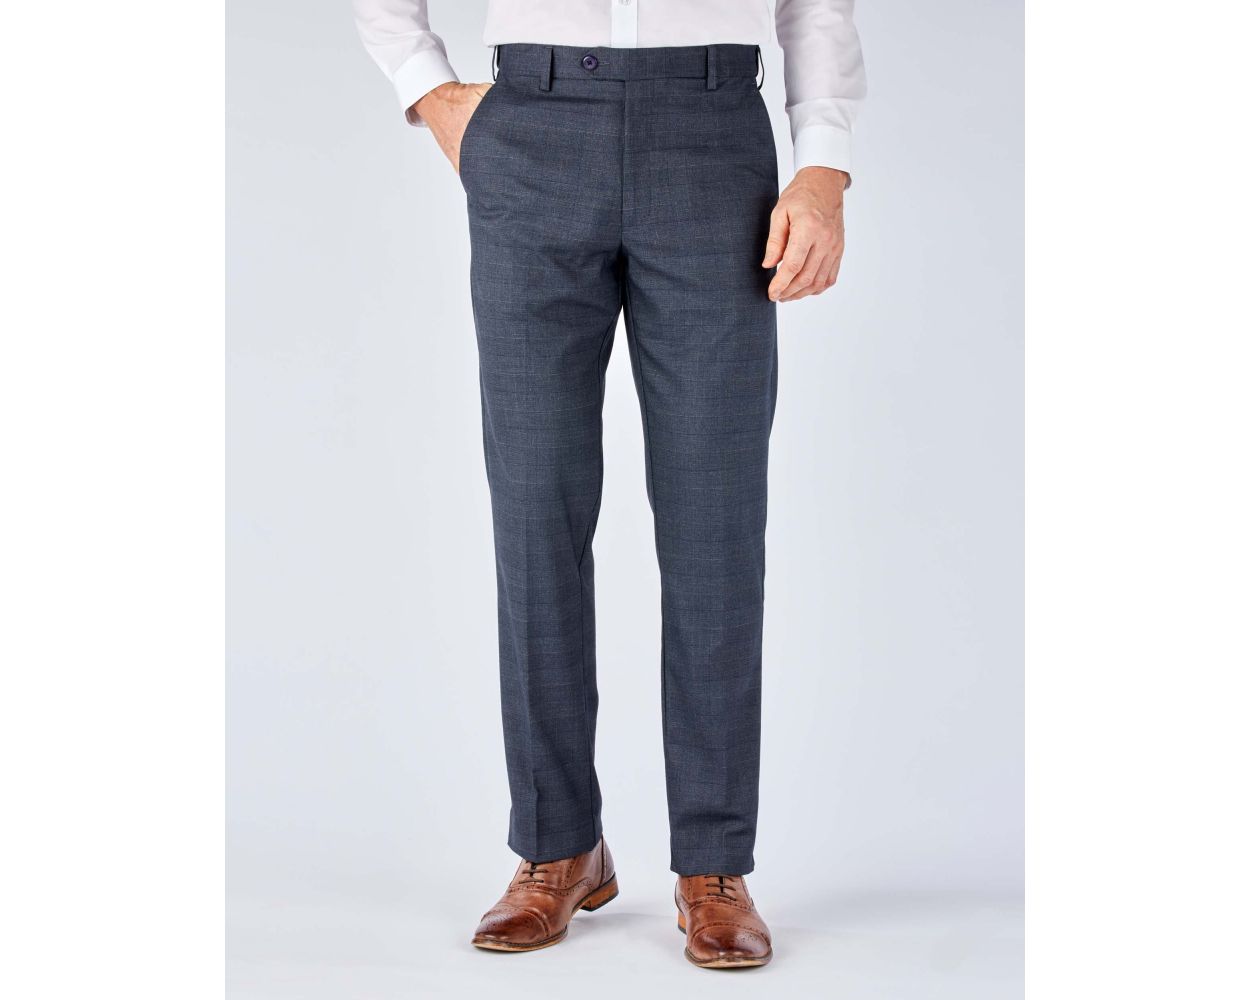 VAN HEUSEN Slim Fit Men Grey Trousers  Buy VAN HEUSEN Slim Fit Men Grey  Trousers Online at Best Prices in India  Flipkartcom